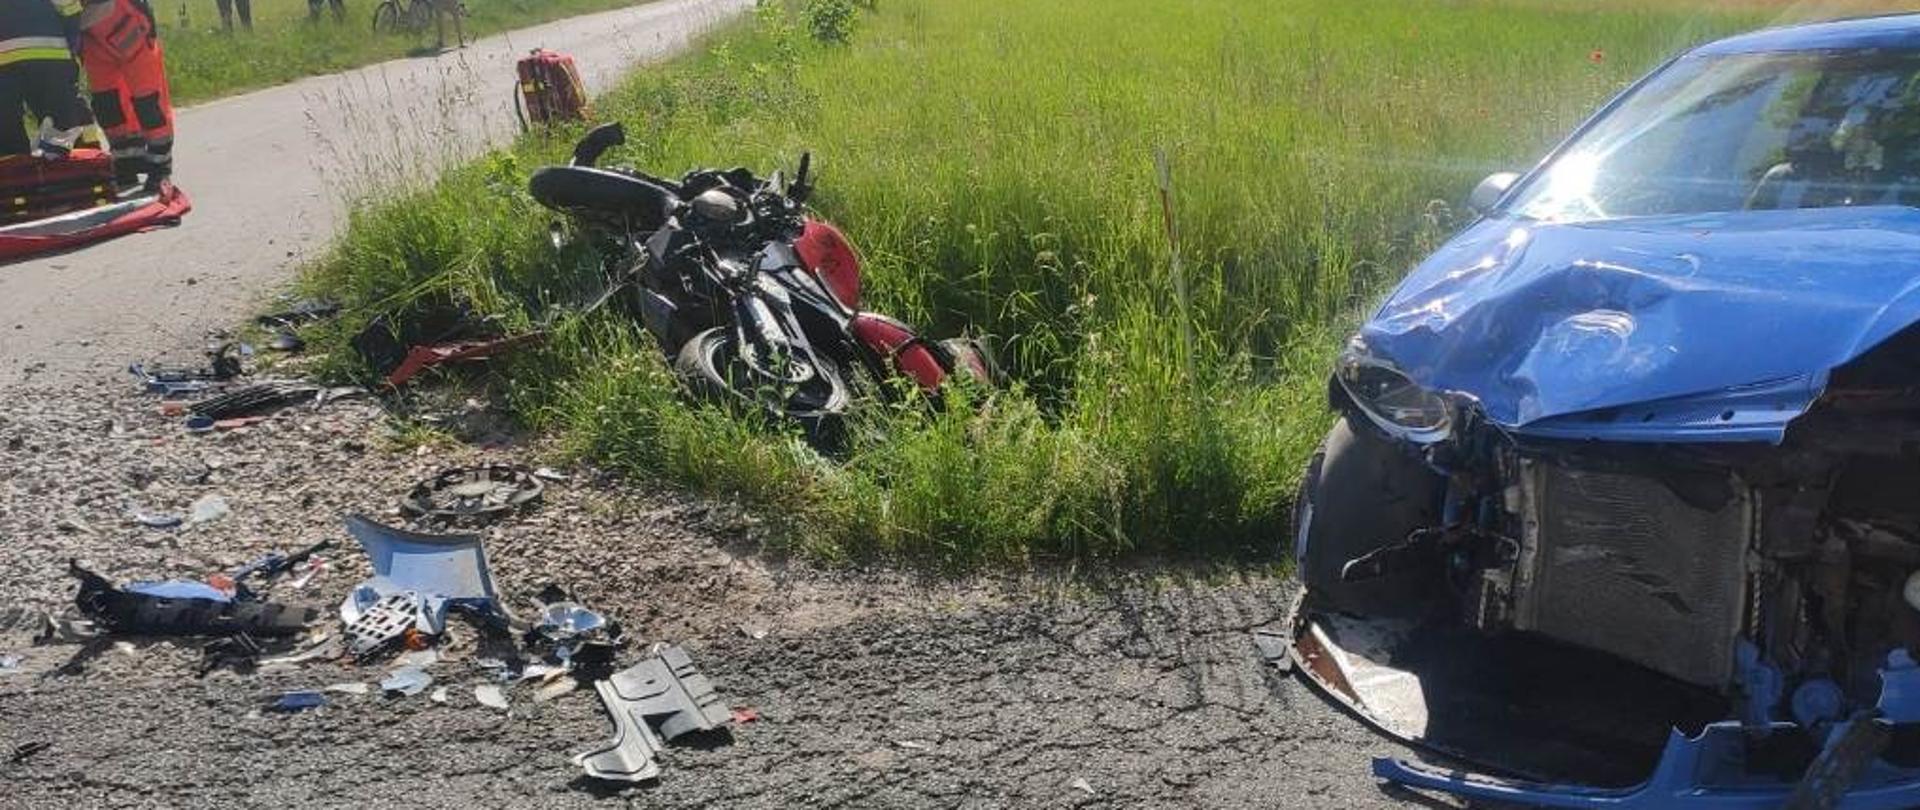 Na zdjęciu uszkodzony motocykl w rowie, rozbity samochód na poboczu drogi, na drugim planie strażacy wraz z ZRM udzielają pomocy medycznej poszkodowanemu motocykliście